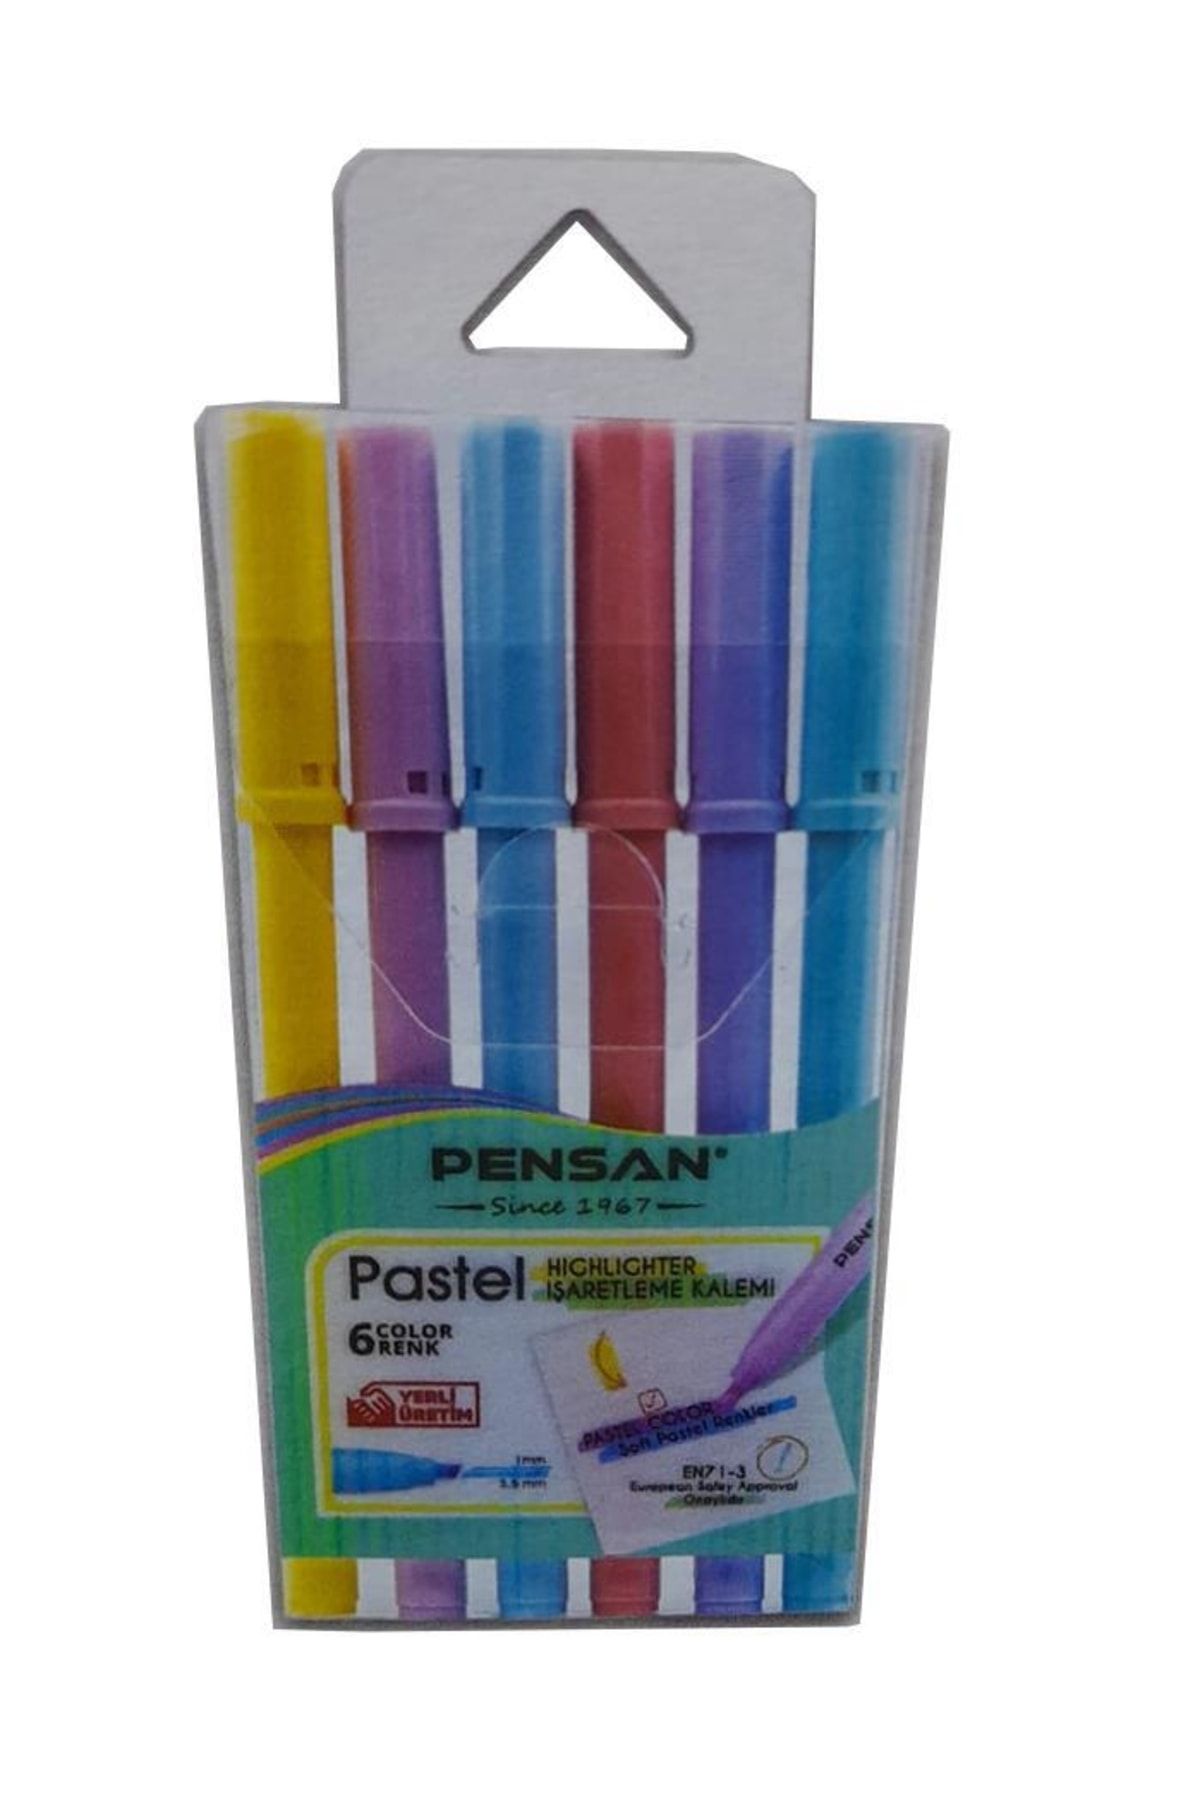 Pensan Işaret Kalemi Pastel Renkler Fosforlu Kalem 6 Lı 1 Paket 5 Mm Fosforlu Kalem Seti